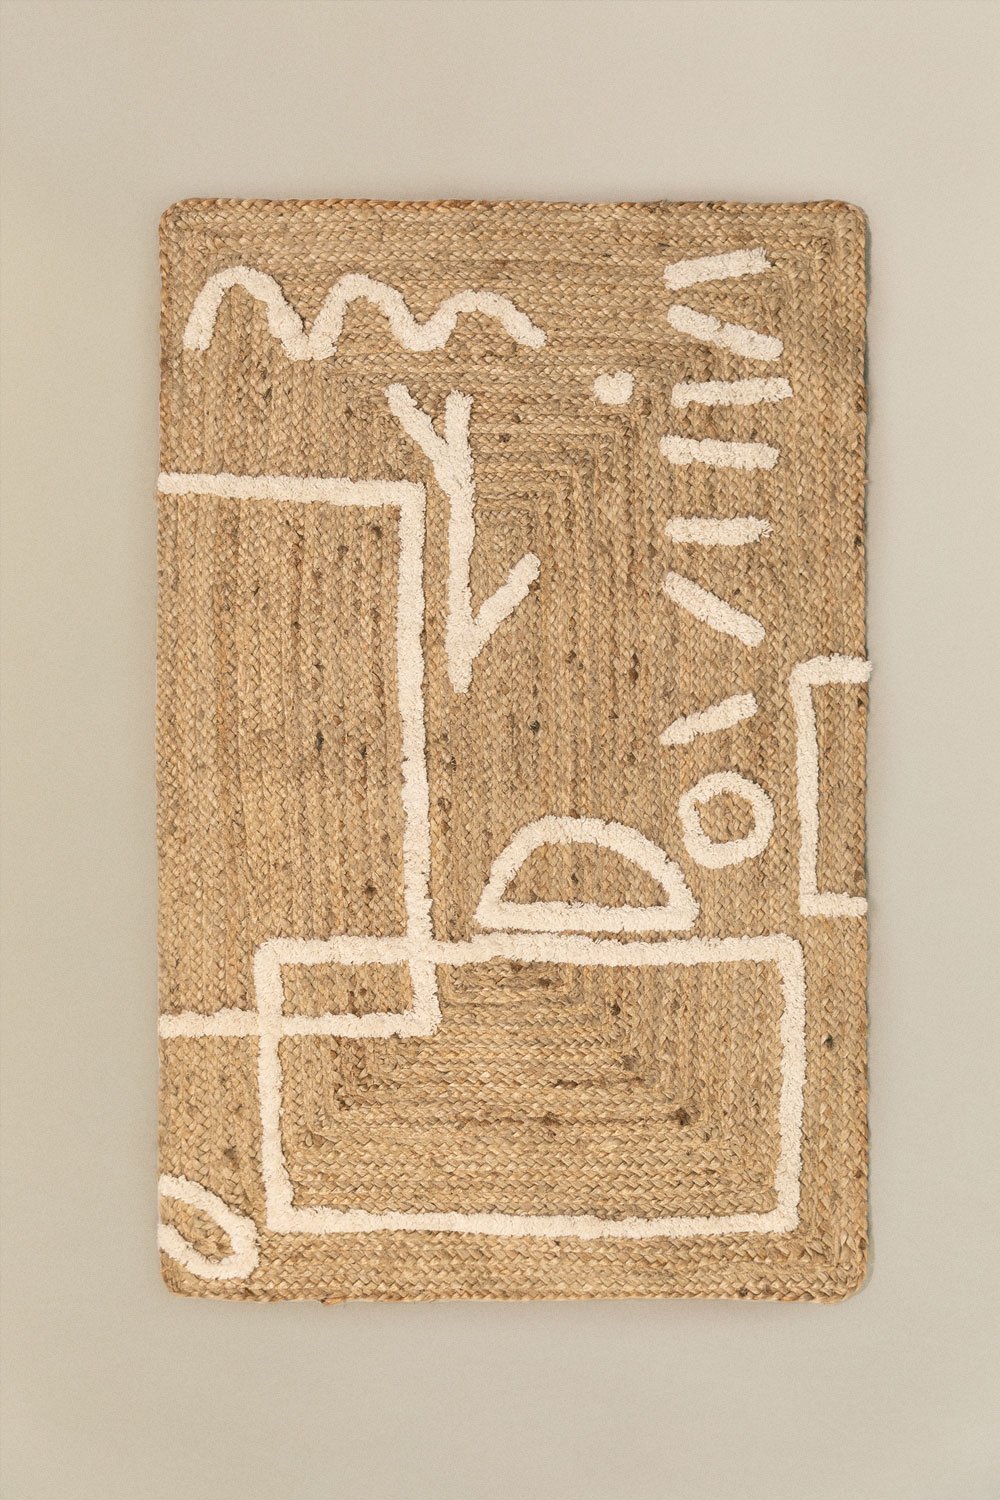 Vloerkleed van jute en katoen (112x71 cm) Dudle, galerij beeld 1